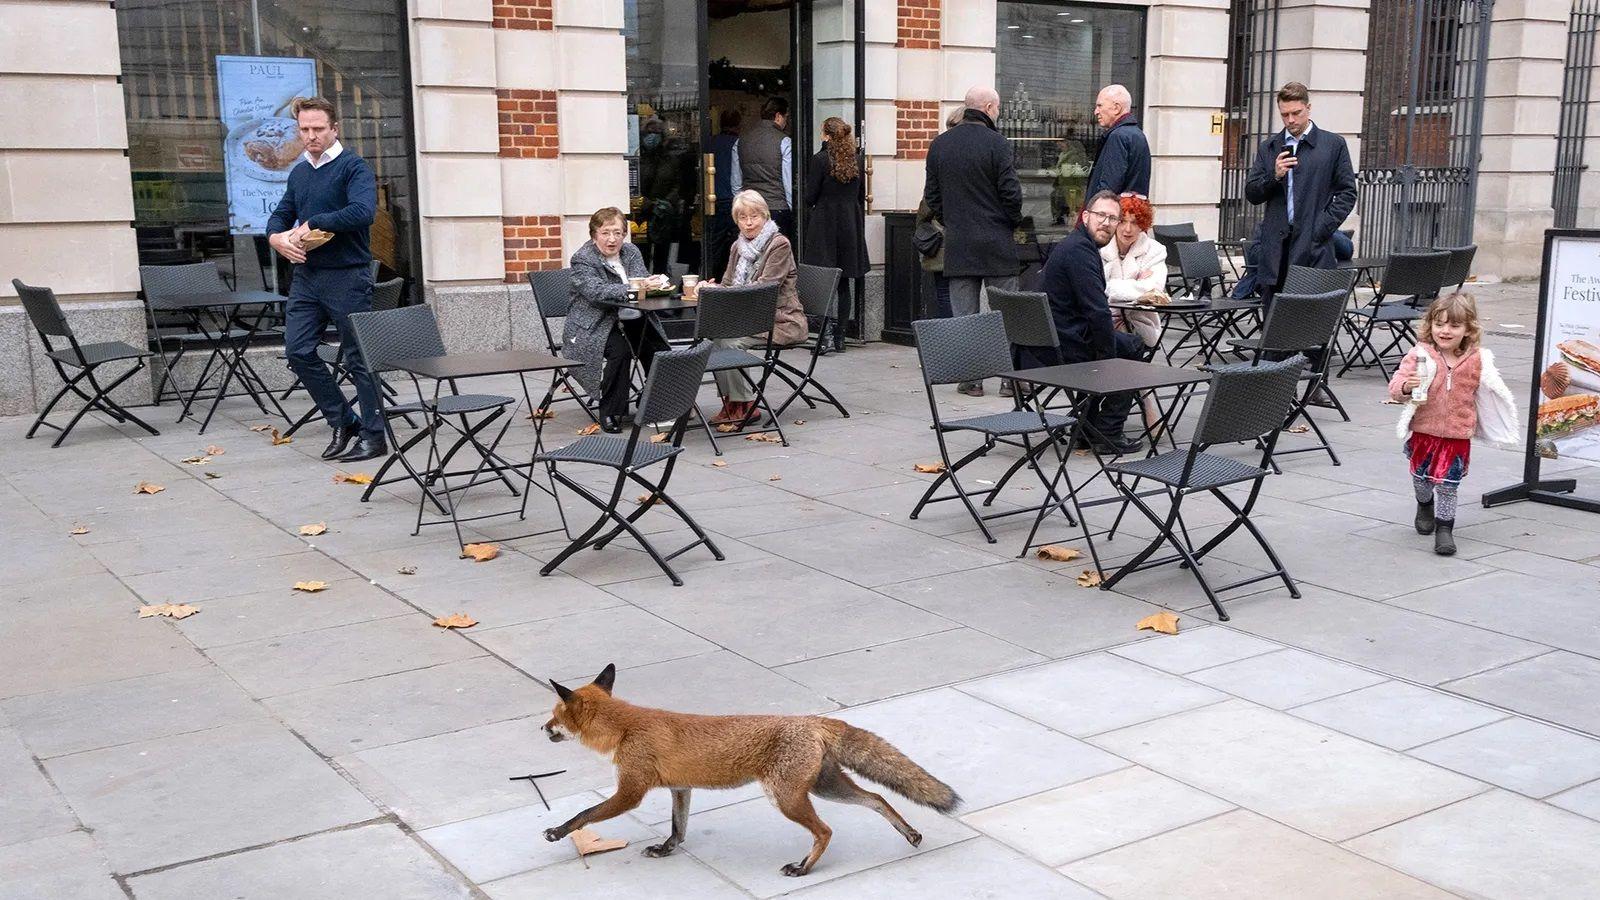 Raposa passando em frente a café em Londres em plena luz do dia